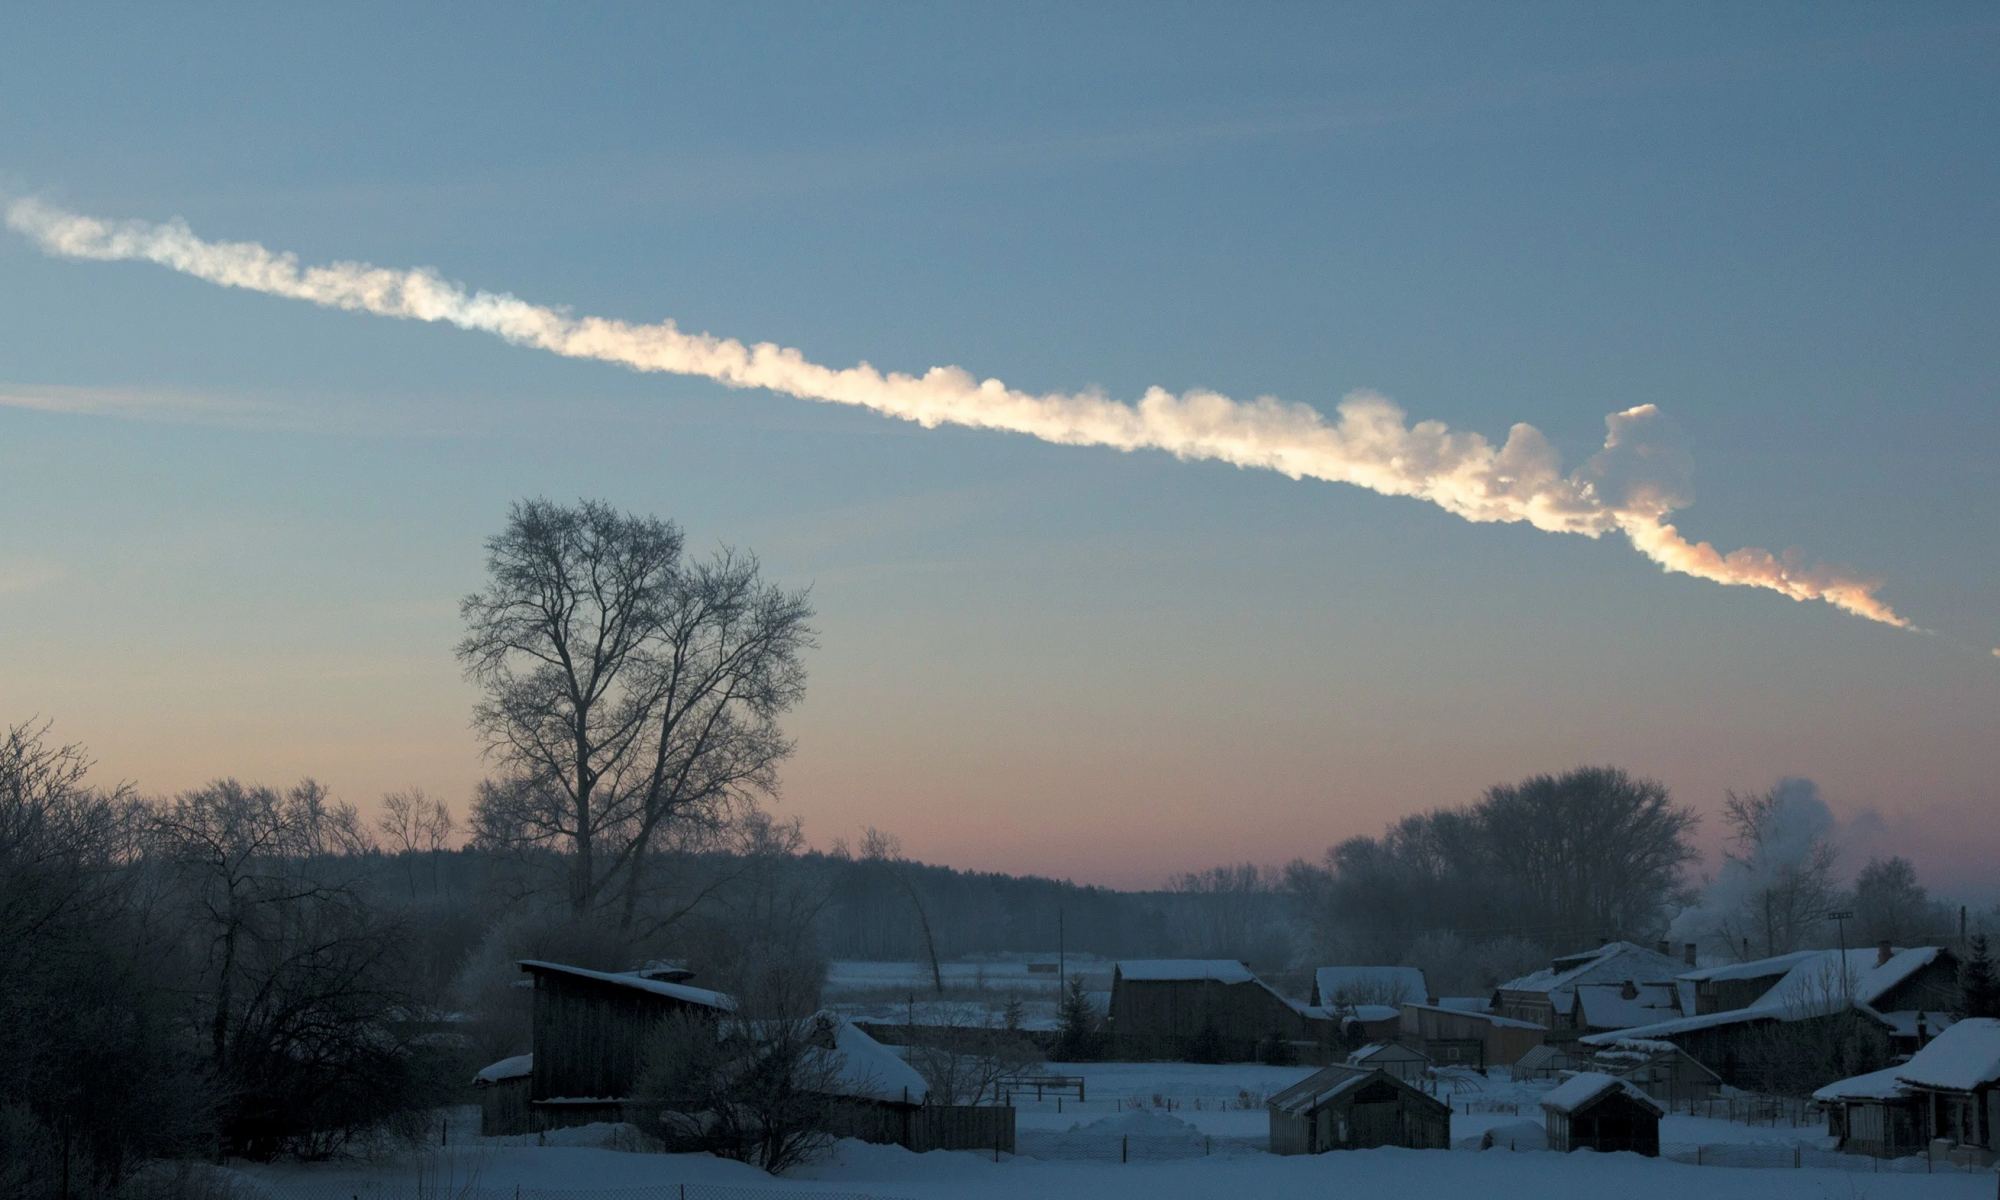 Vapor trail from 2013 Chelyabinsk meteor